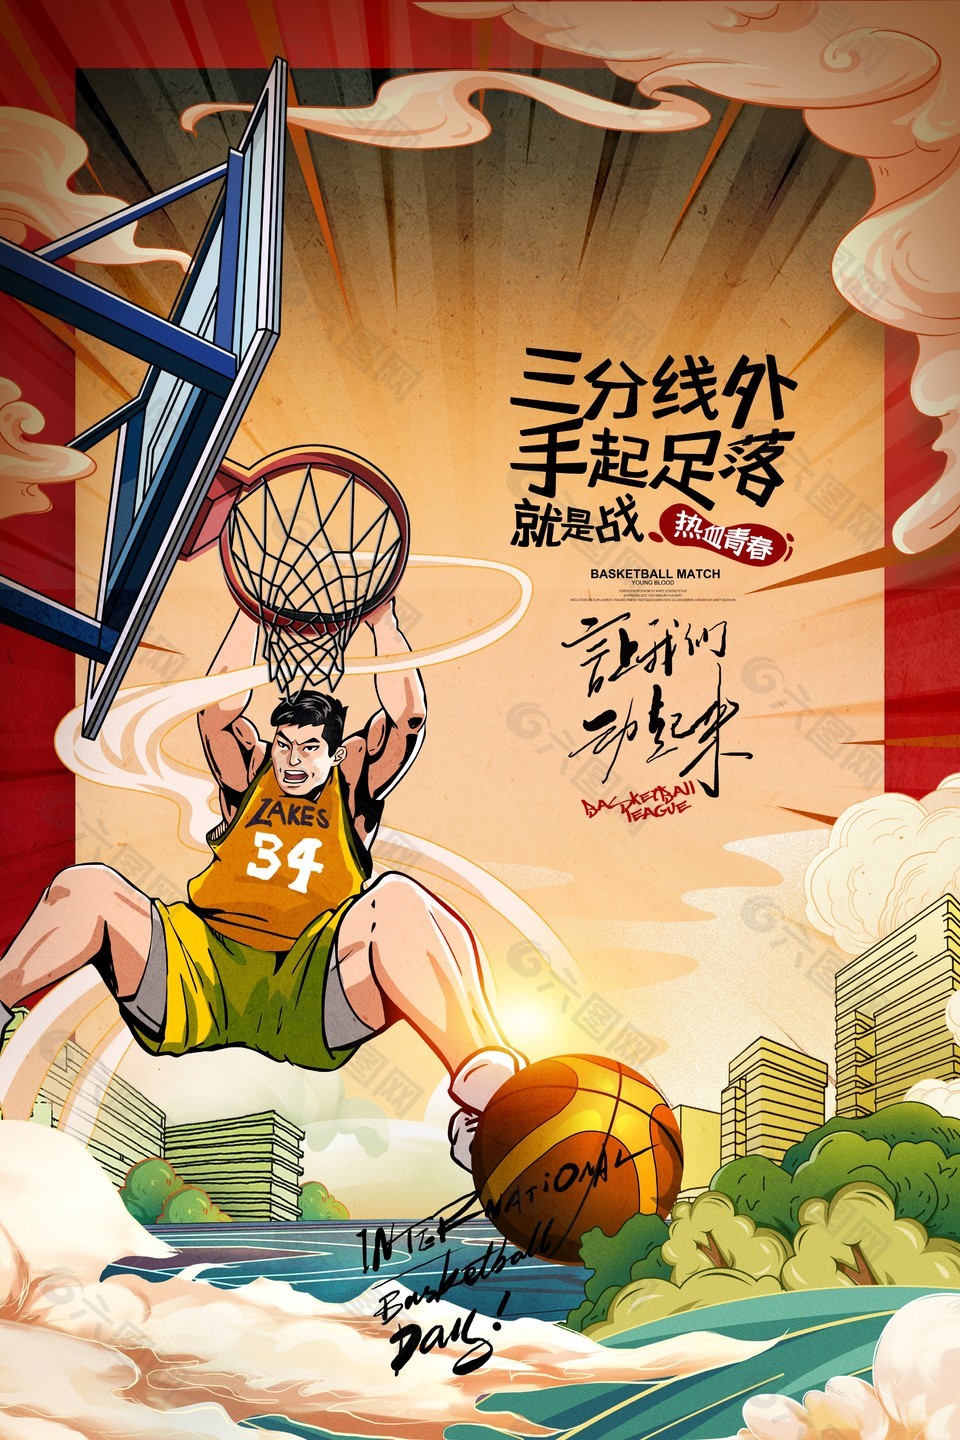 热血篮球创意宣传推广海报